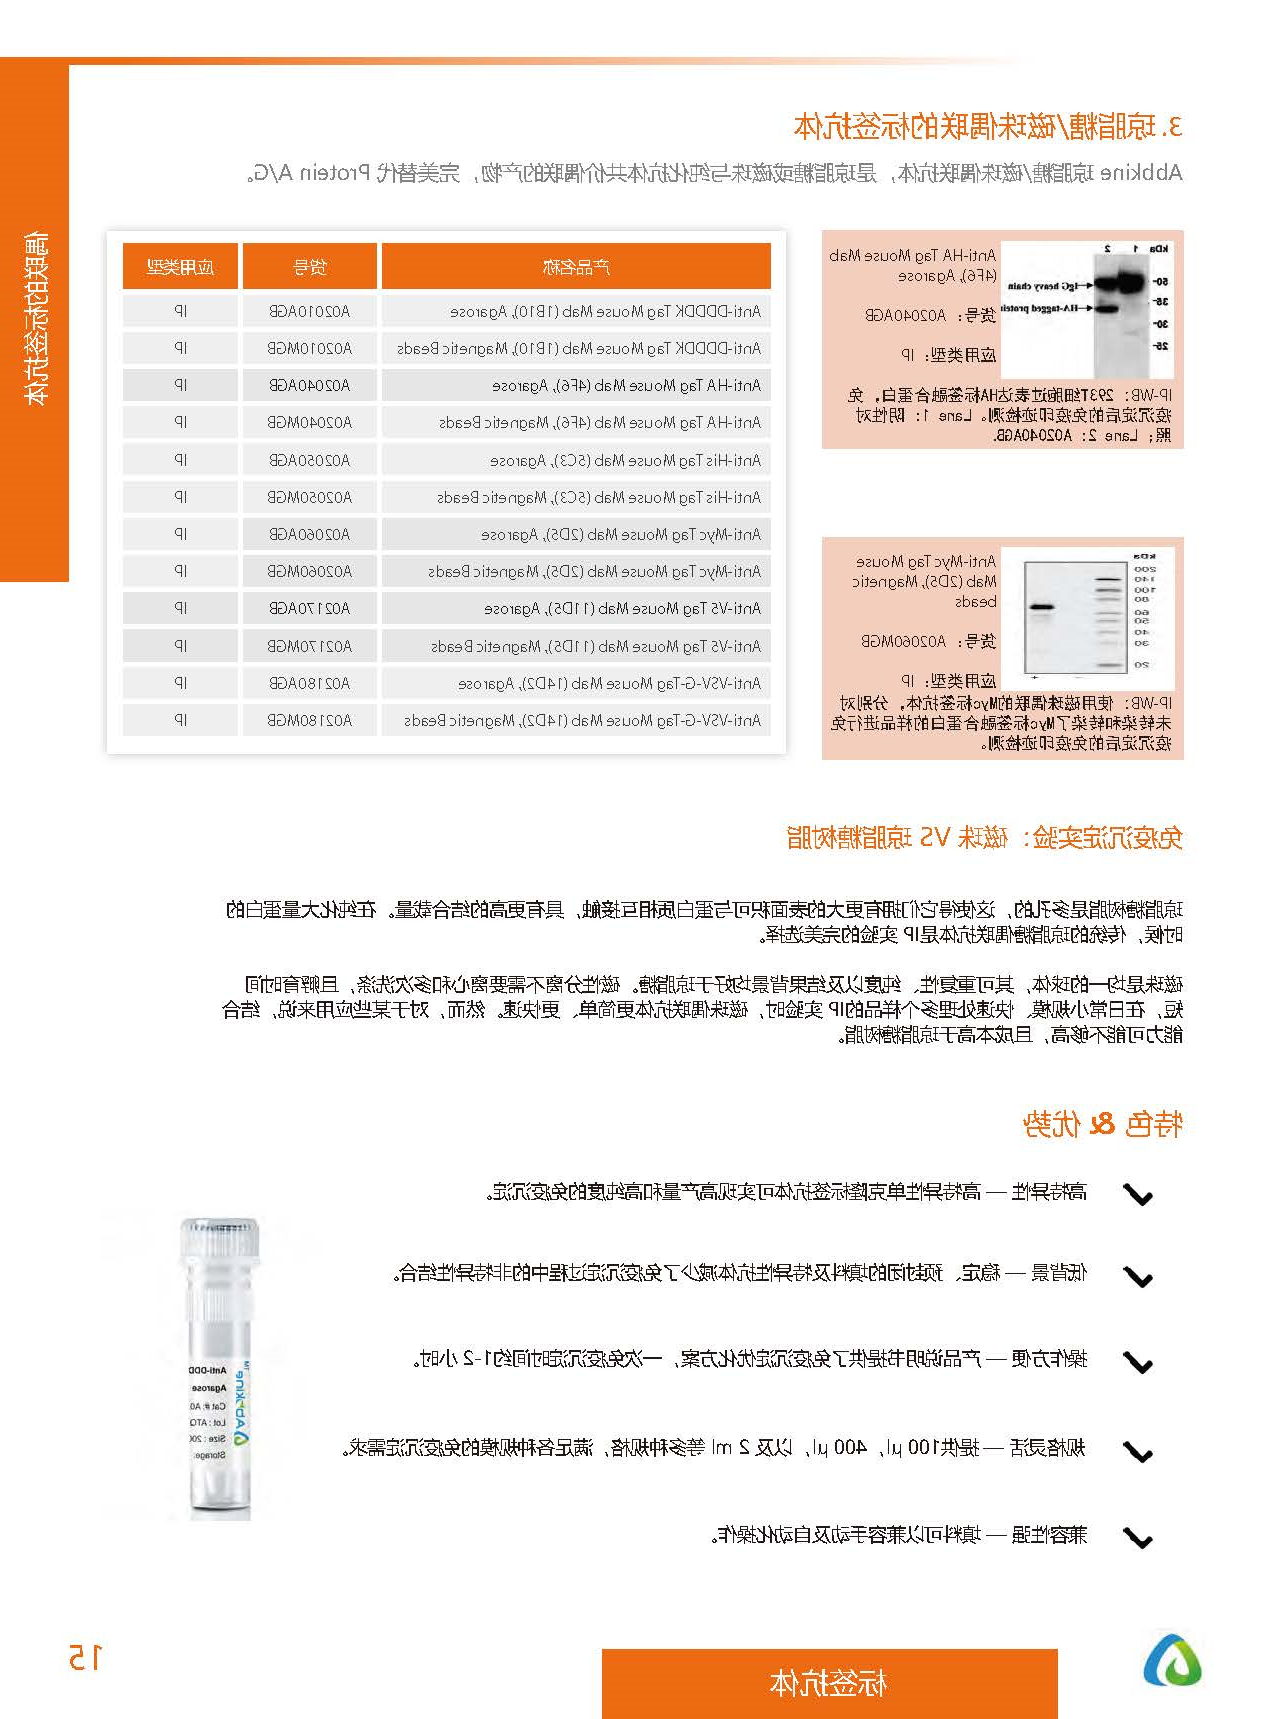 内参抗体与标签抗体产品线-产品手册